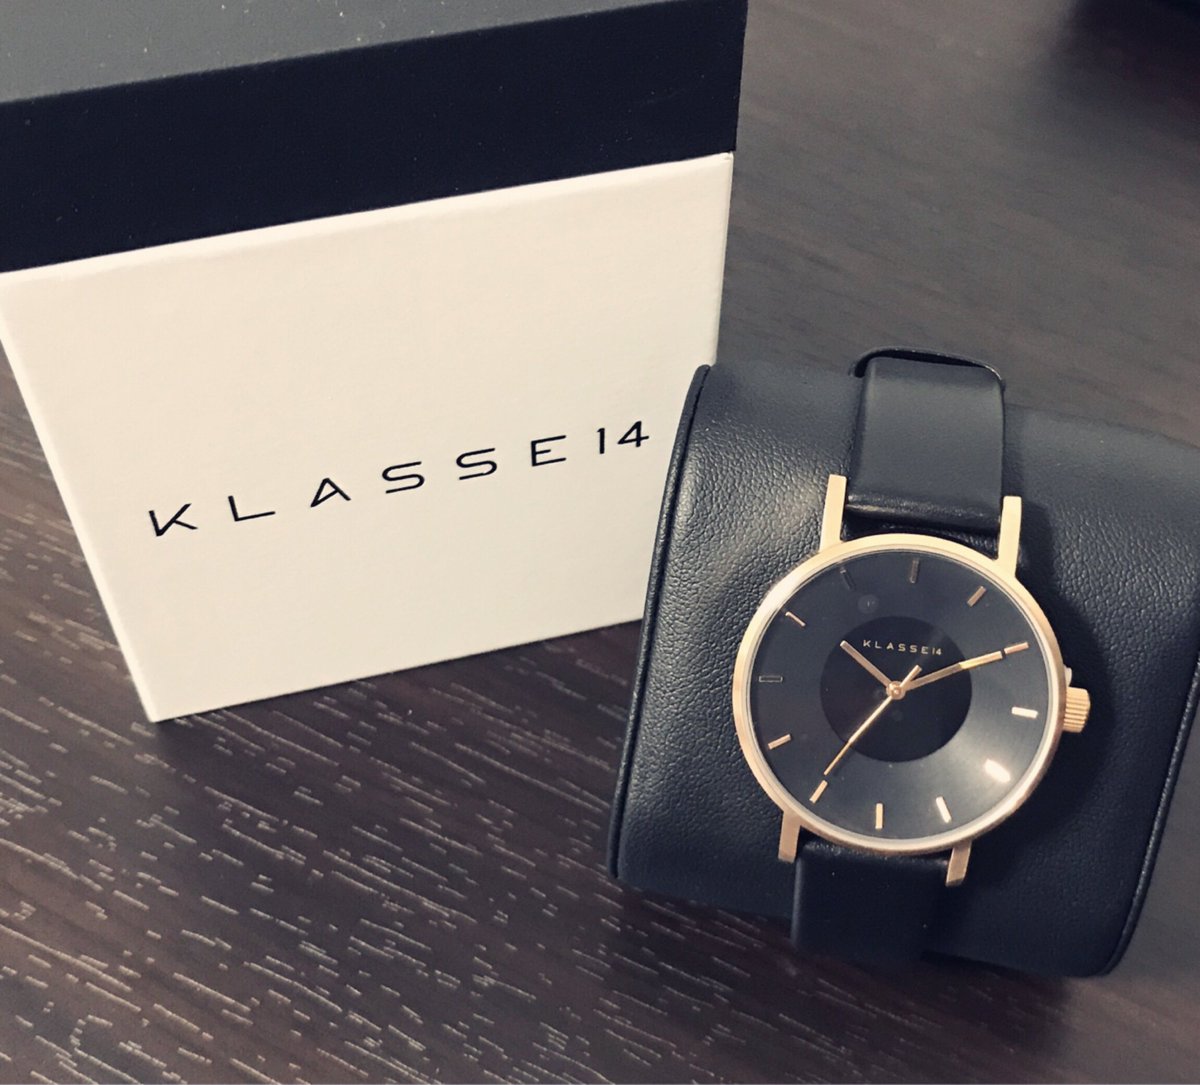 花郷 on Twitter: "KLASSE14さんより、素敵な時計を頂きました。♡ モデル/VOLARE DARK ROSE 36MM